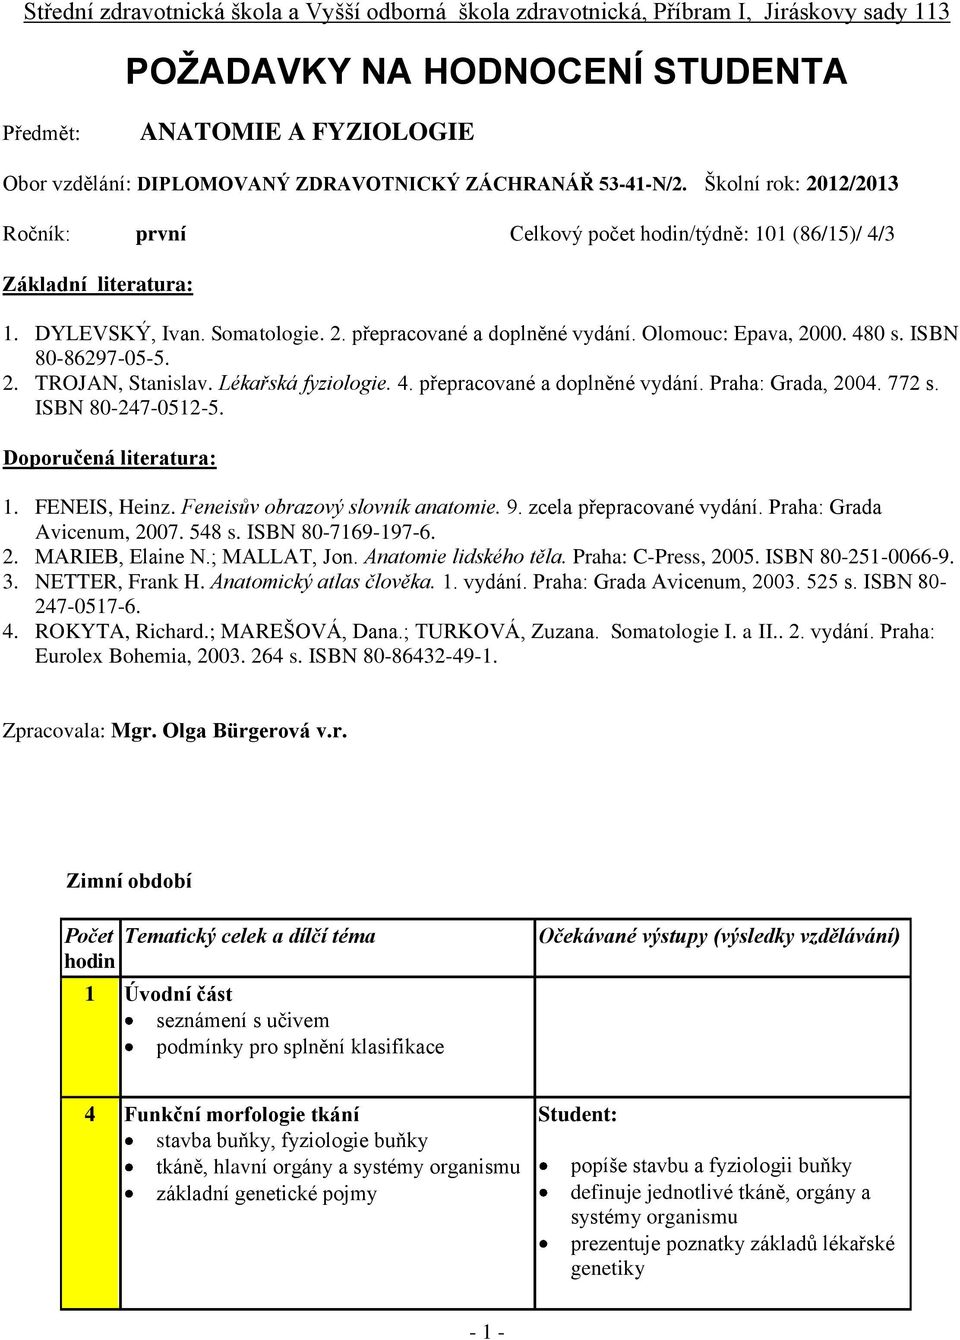 Olomouc: Epava, 2000. 480 s. ISBN 80-86297-0-. 2. TROJAN, Stanislav. Lékařská fyziologie. 4. přepracované a doplněné vydání. Praha: Grada, 2004. 772 s. ISBN 80-247-012-. Doporučená literatura: 1.